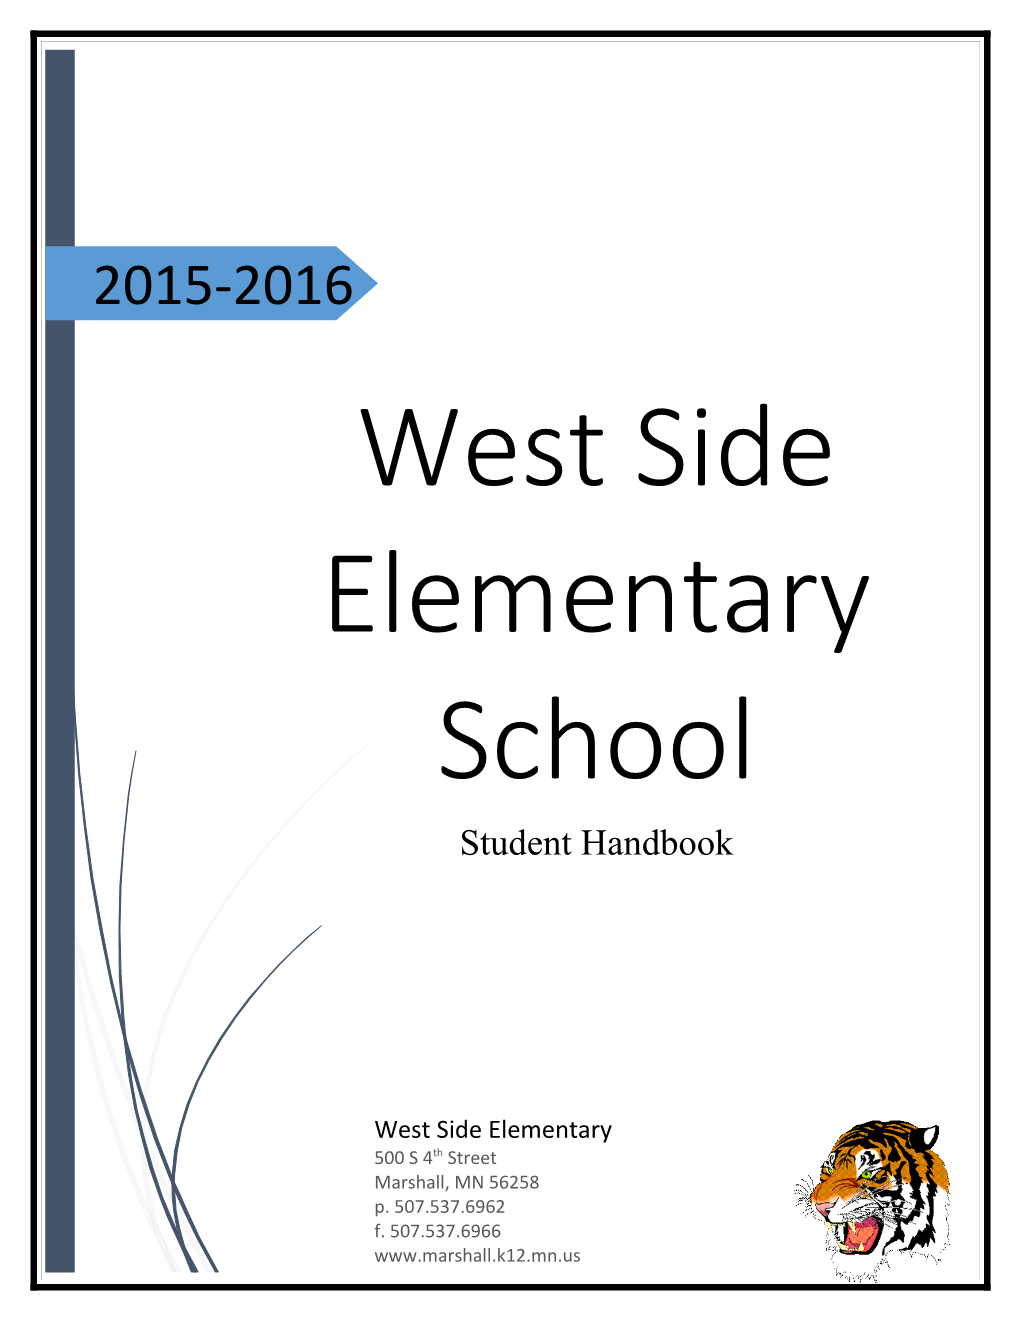 West Side Elementary School